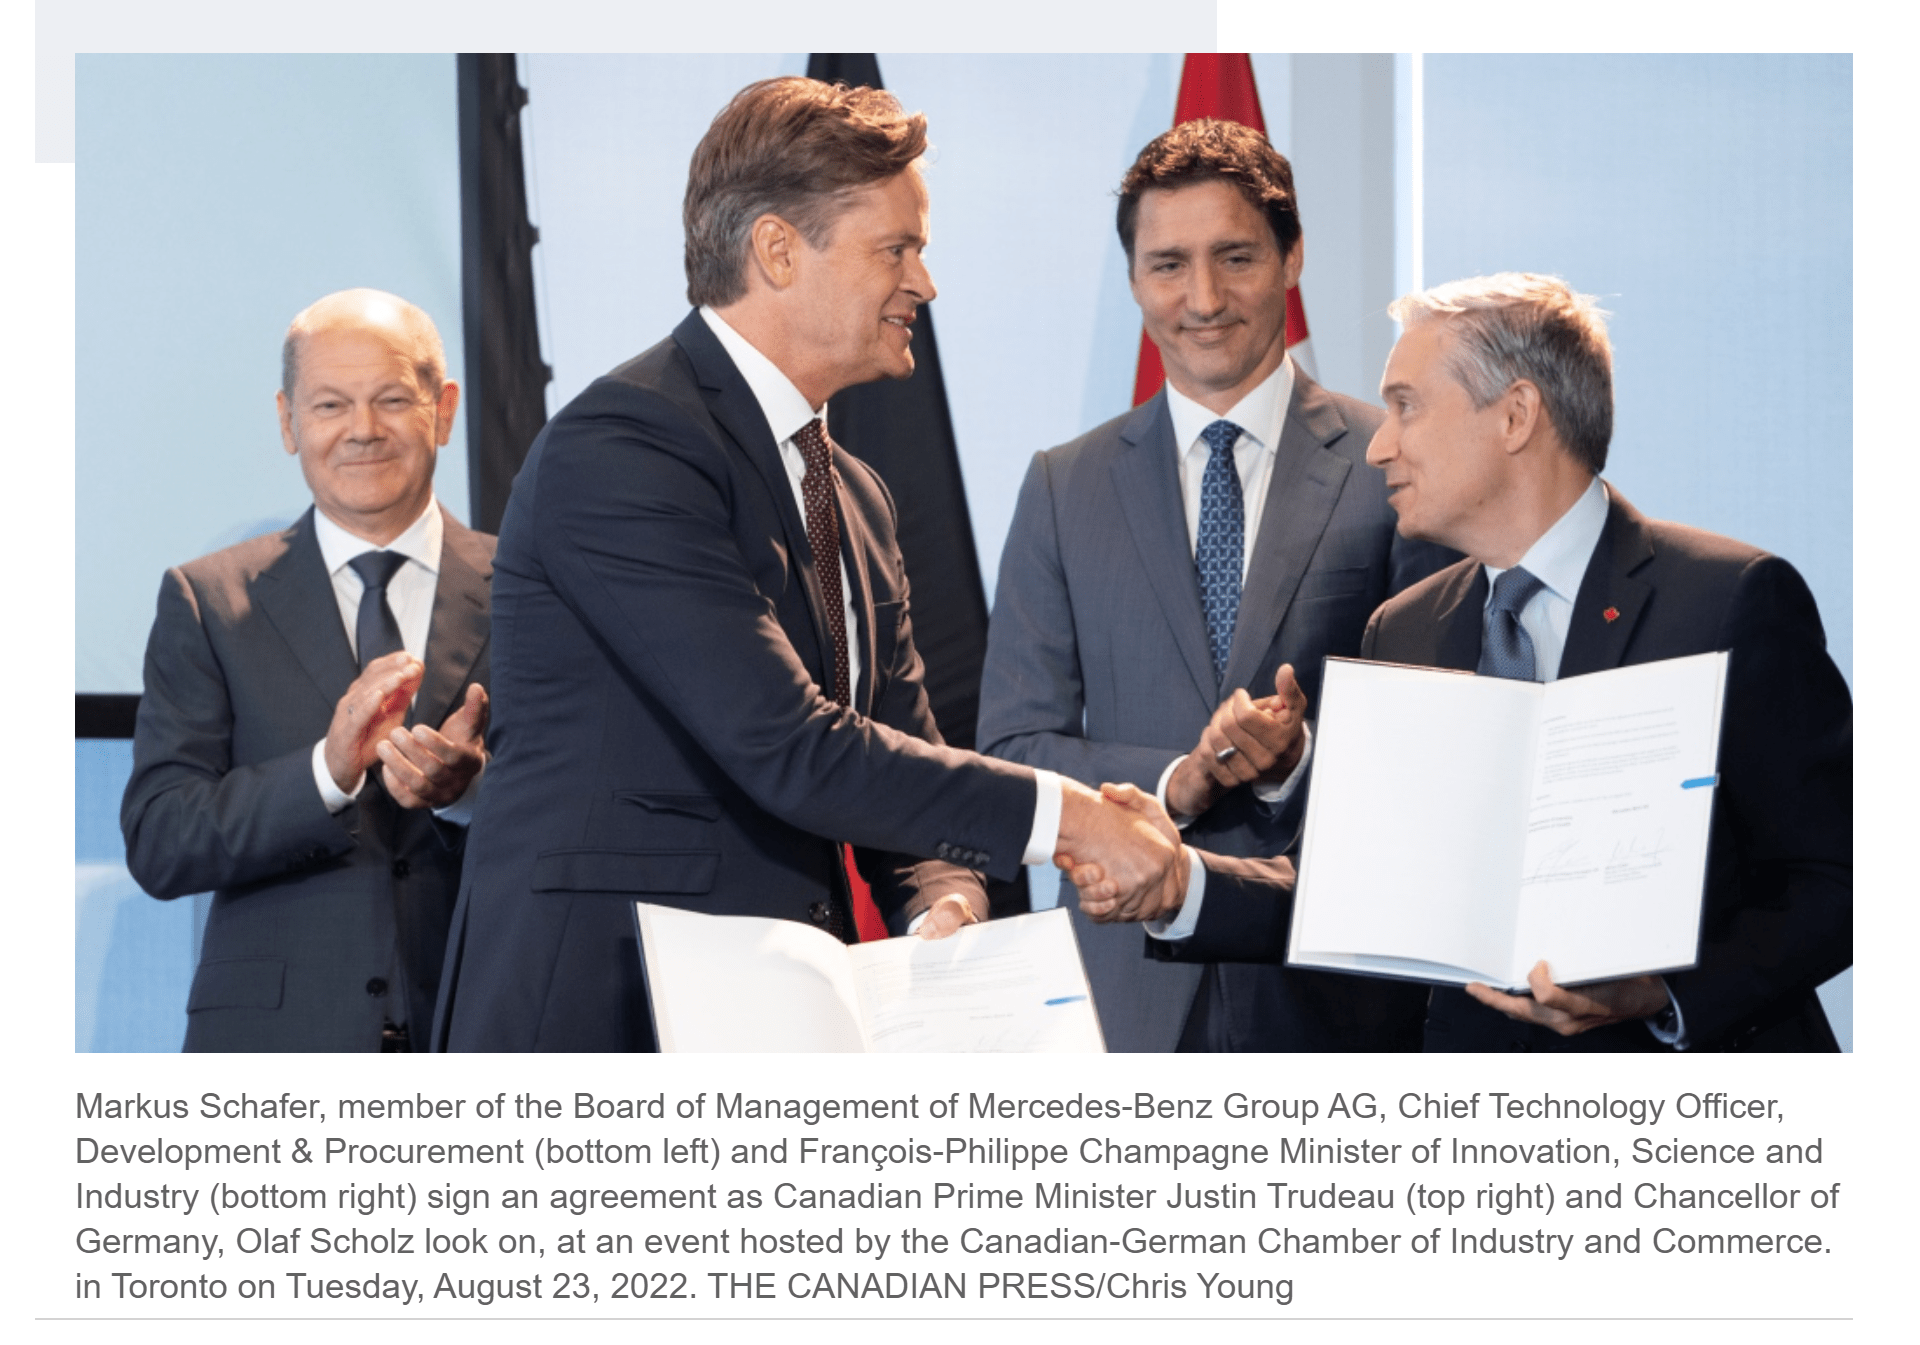 کانادا و آلمان قراردادی برای انتقال هیدروژن امضا کردند که اولین تحویل آن از سال 2025 آغاز خواهد شد